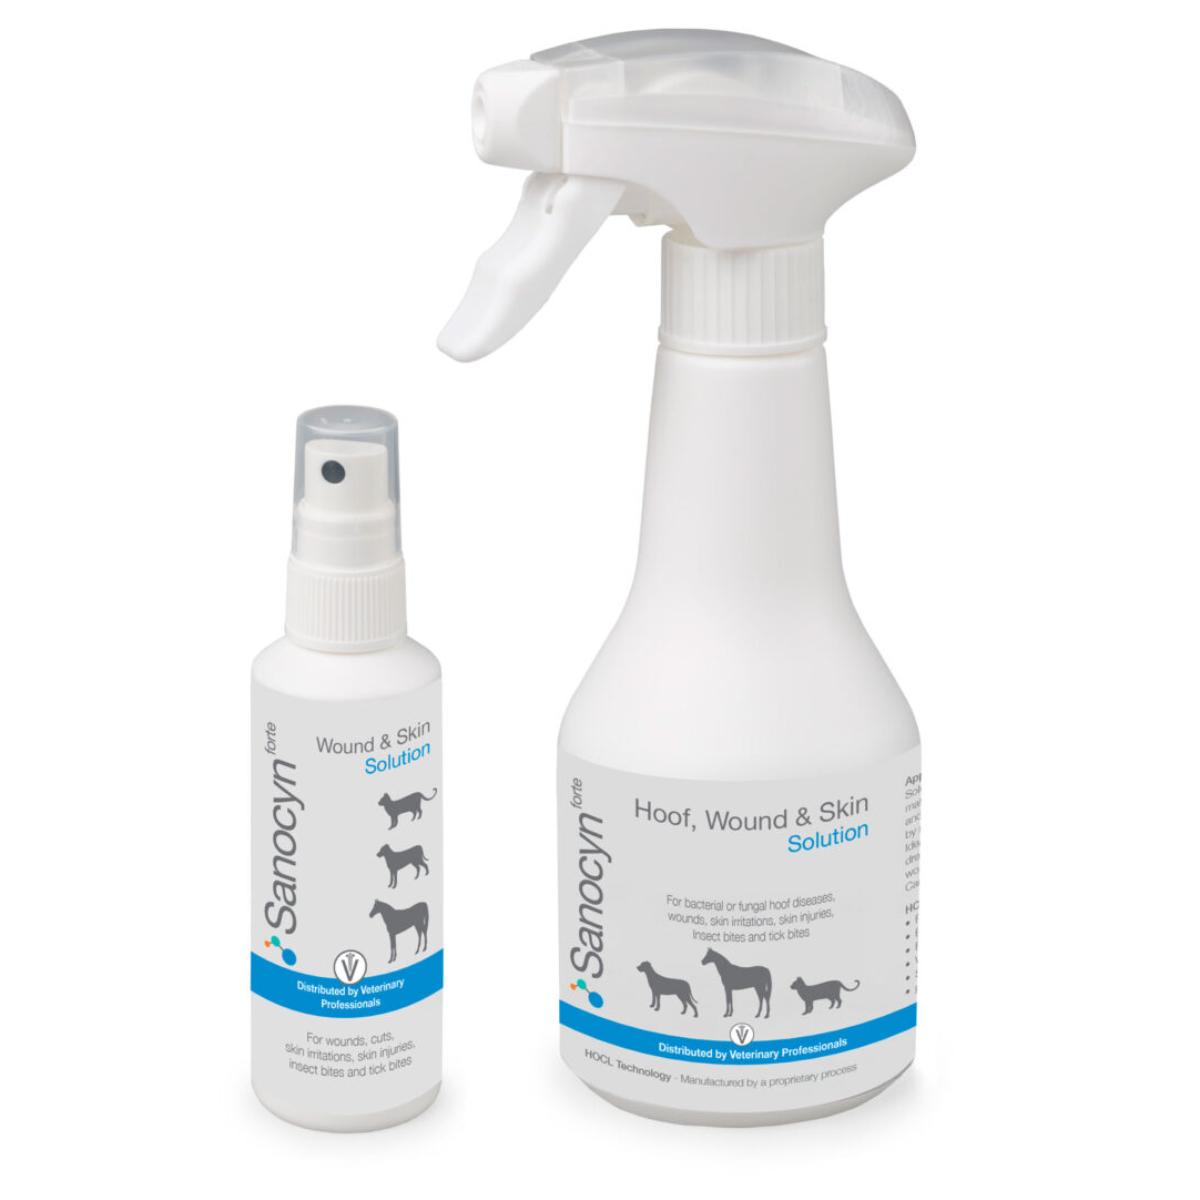 SANOCYN Forte Rani si Leziuni Cutanate, îngrijire răni soluție câini și pisici, antibacteriană, flacon, 75ml